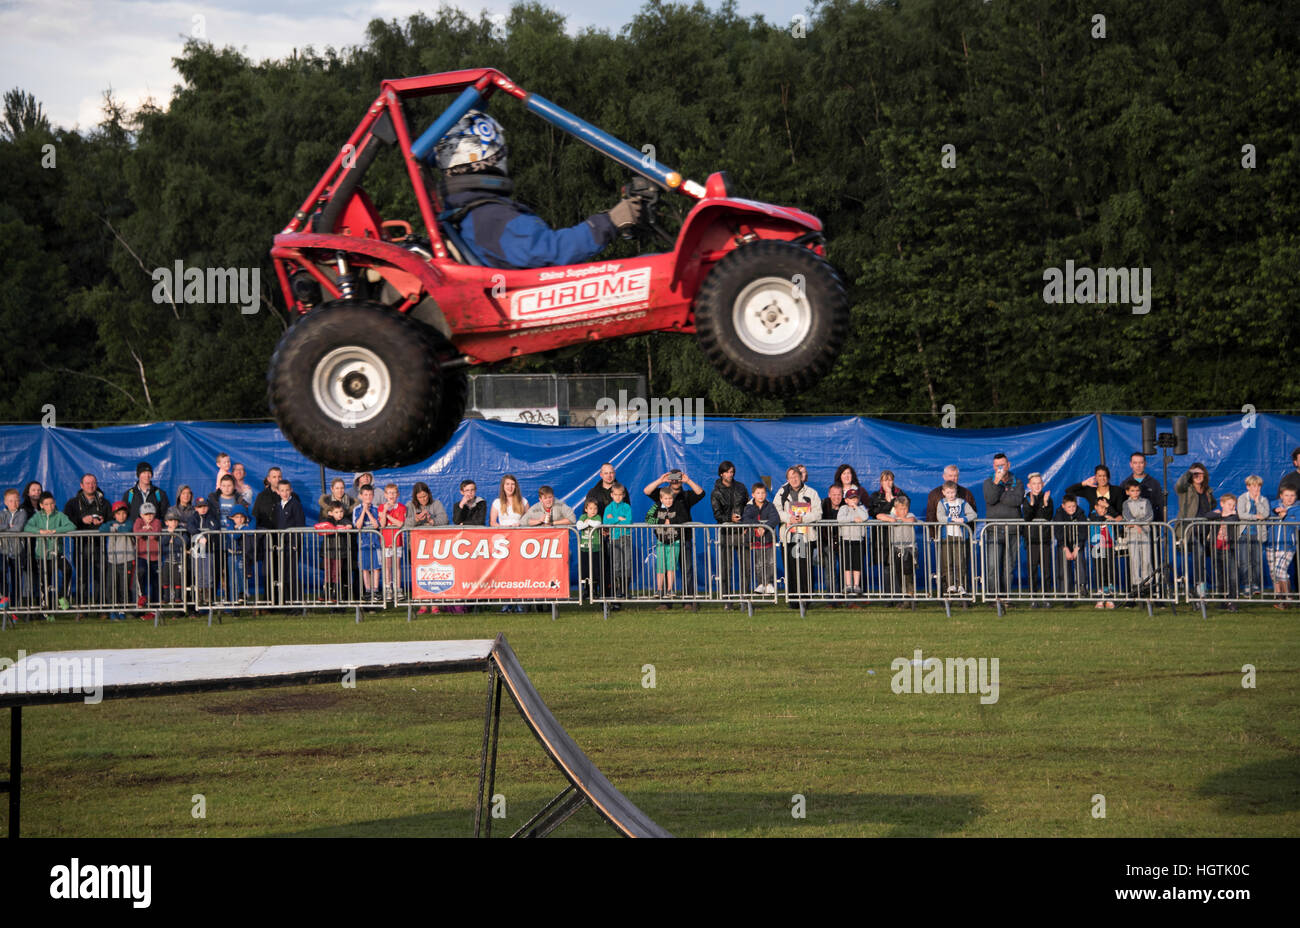 Car driver performing daring aerial stunt. Stock Photo